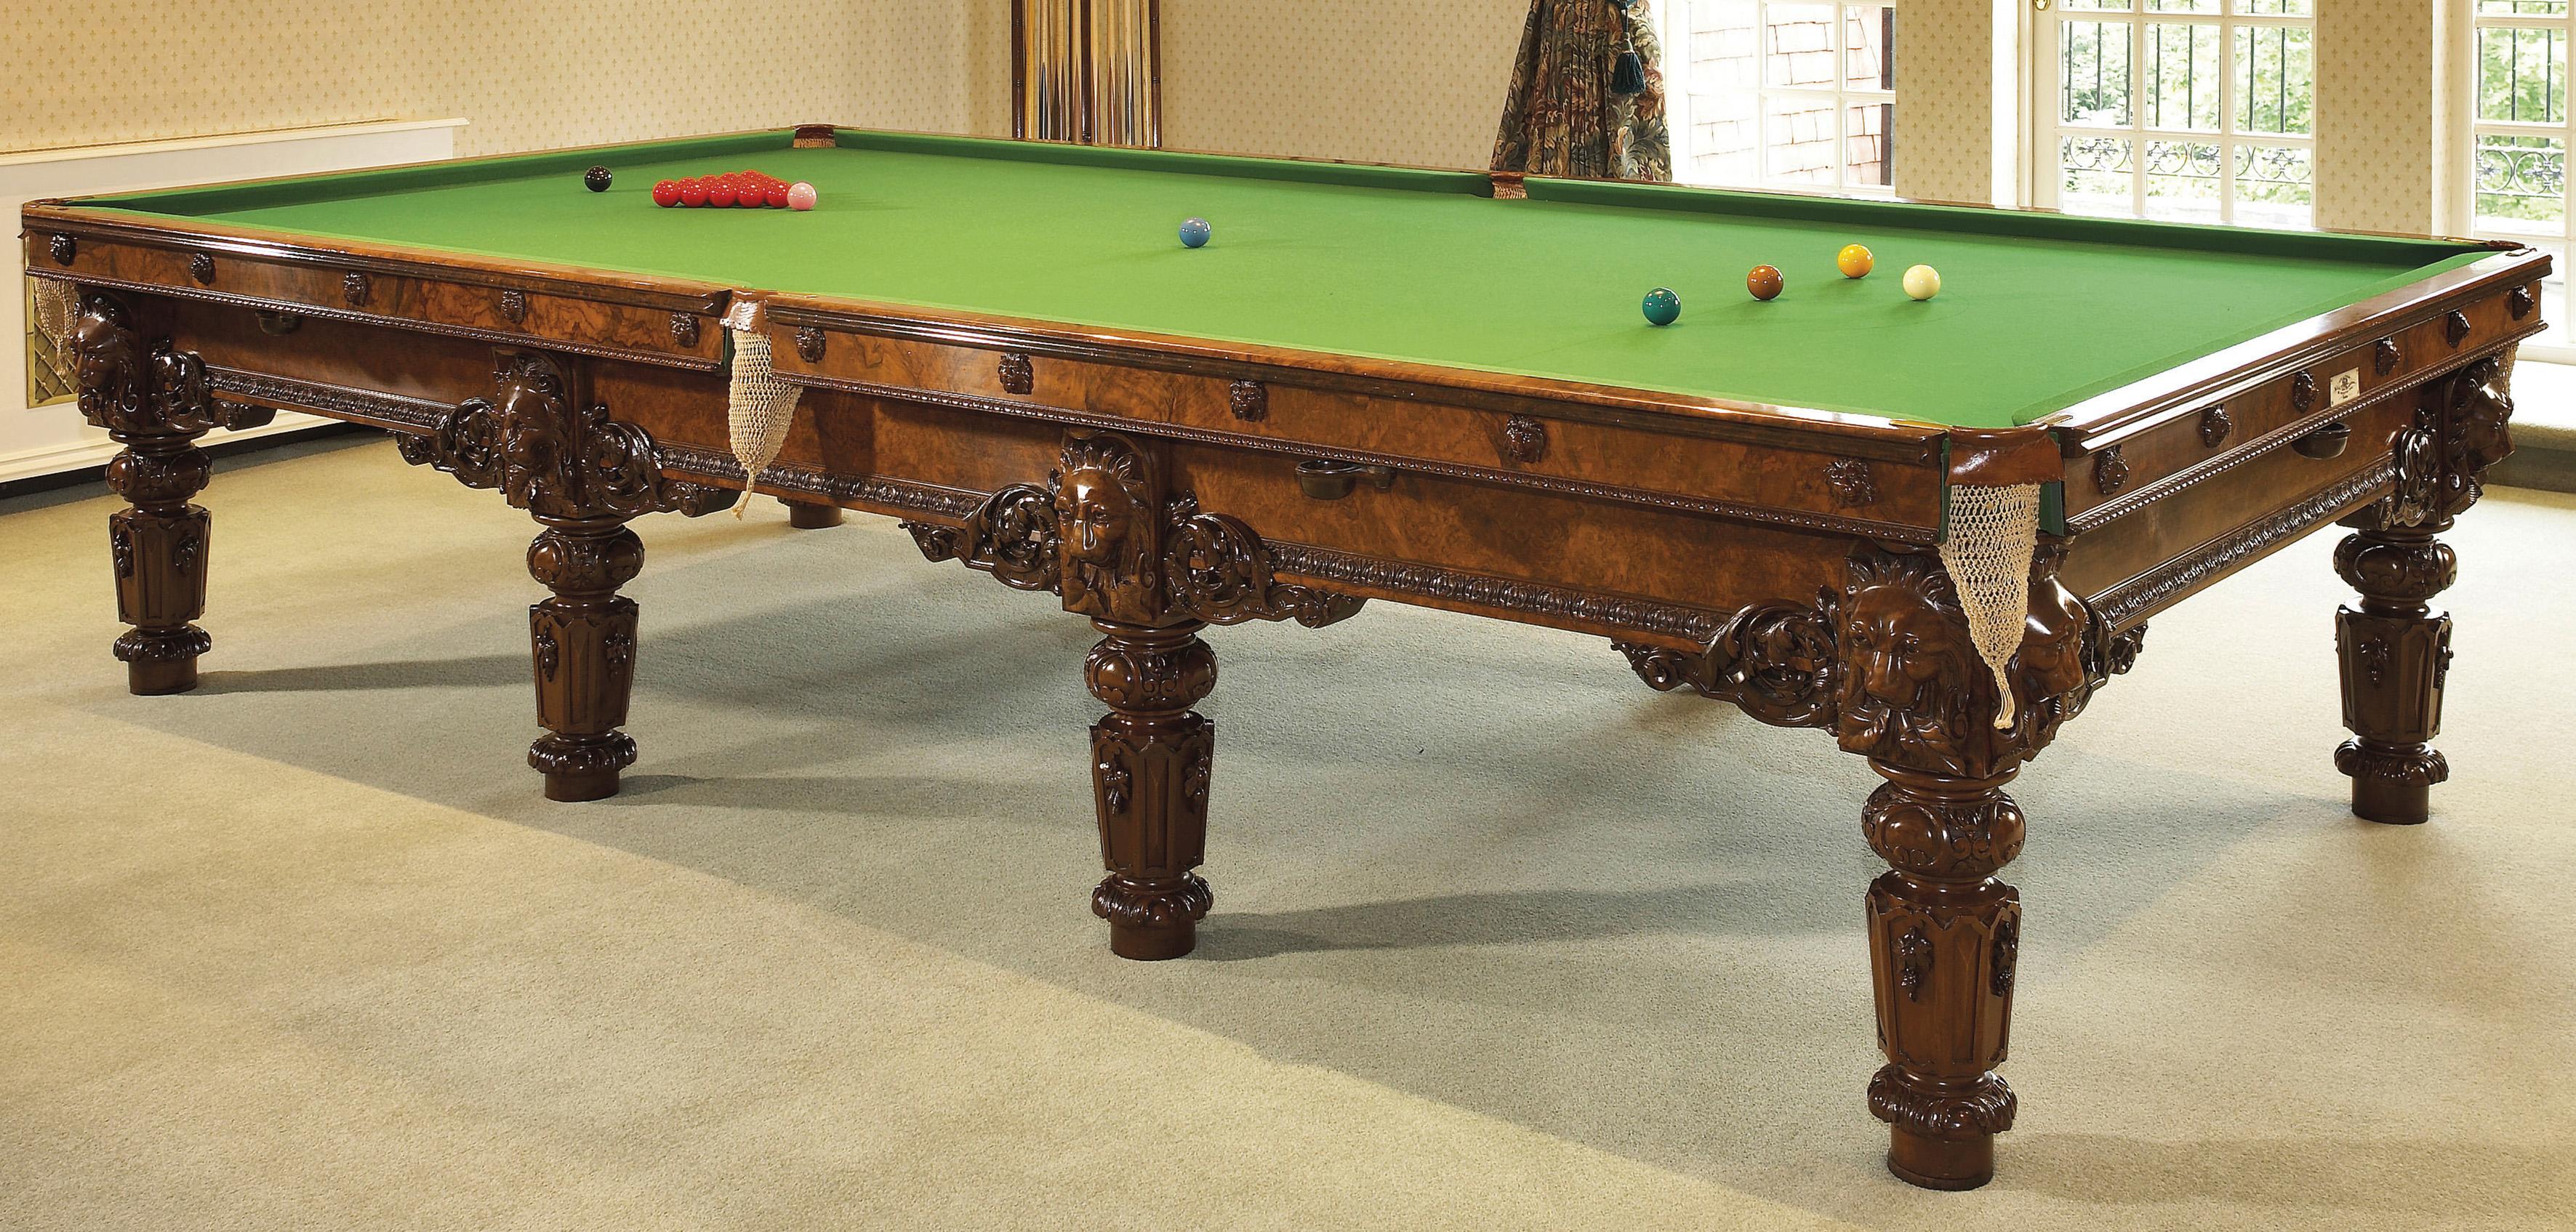 Une exceptionnelle table de billard en noyer sculpté et ses accessoires par Cox & Yeman.

Londres, vers 1880. 

Une extrémité porte une étiquette en ivoire 'Cox & Yeman / Billiard Table Manufacturers / 184 BROMPTON ROAD, / London'. 

Le